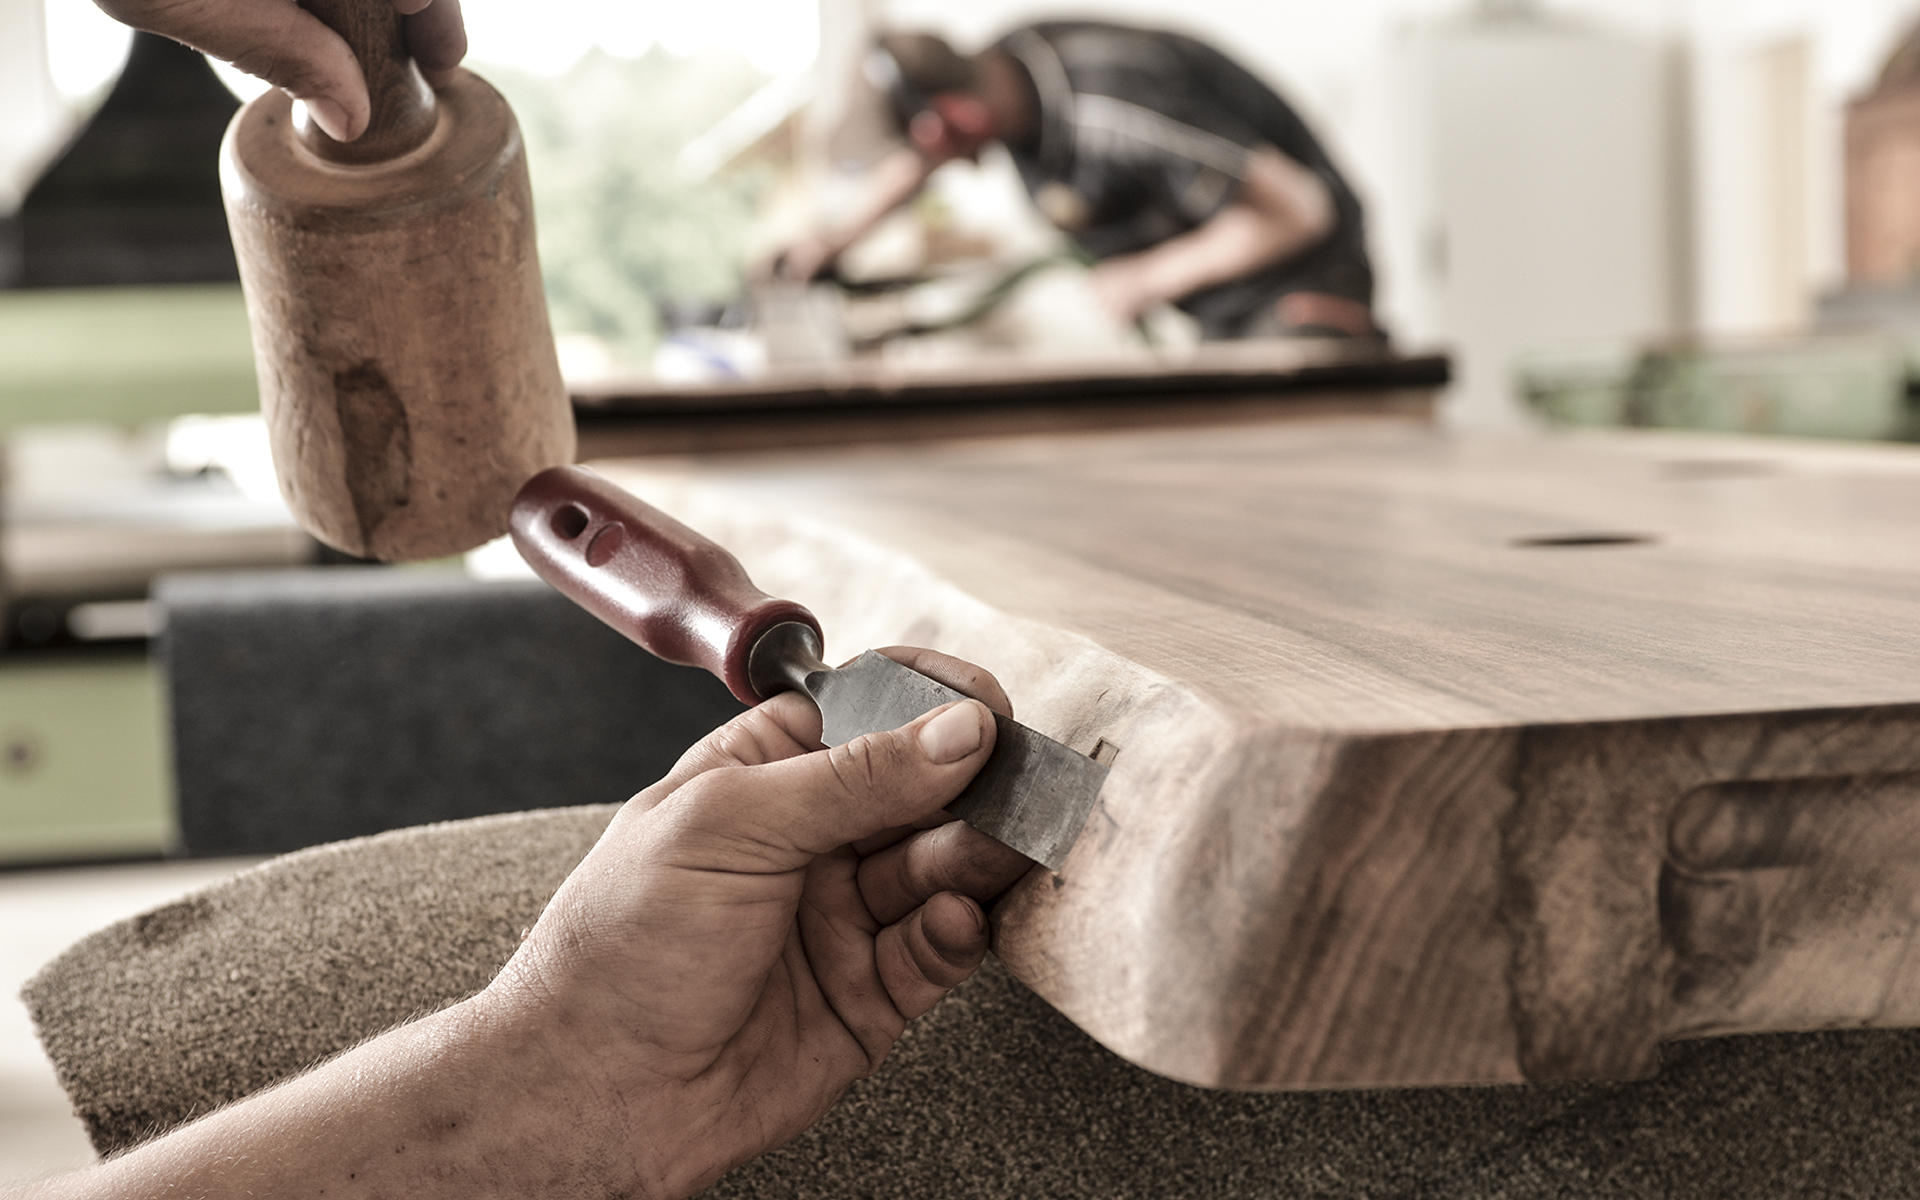 Con mucho trabajo manual, experiencia y sensibilidad, en Stammdesign se crean productos únicos hechos de madera